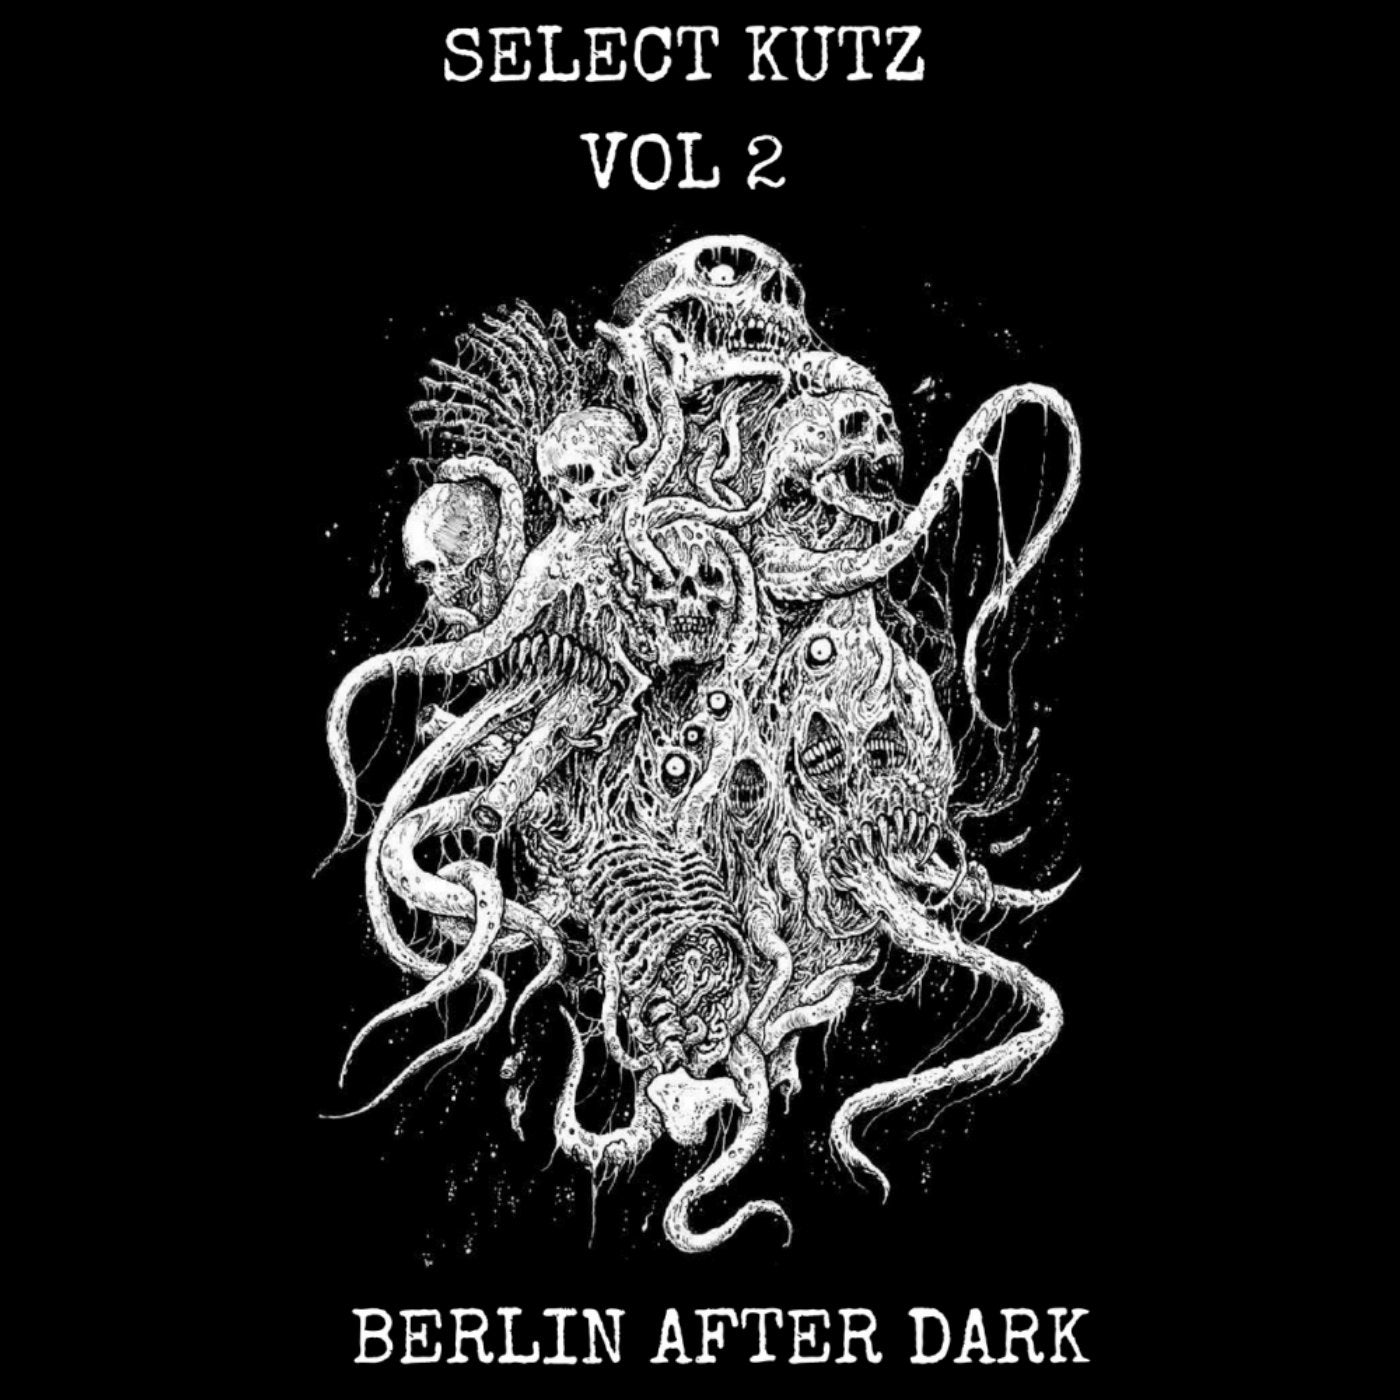 Select Kutz, Vol. 2